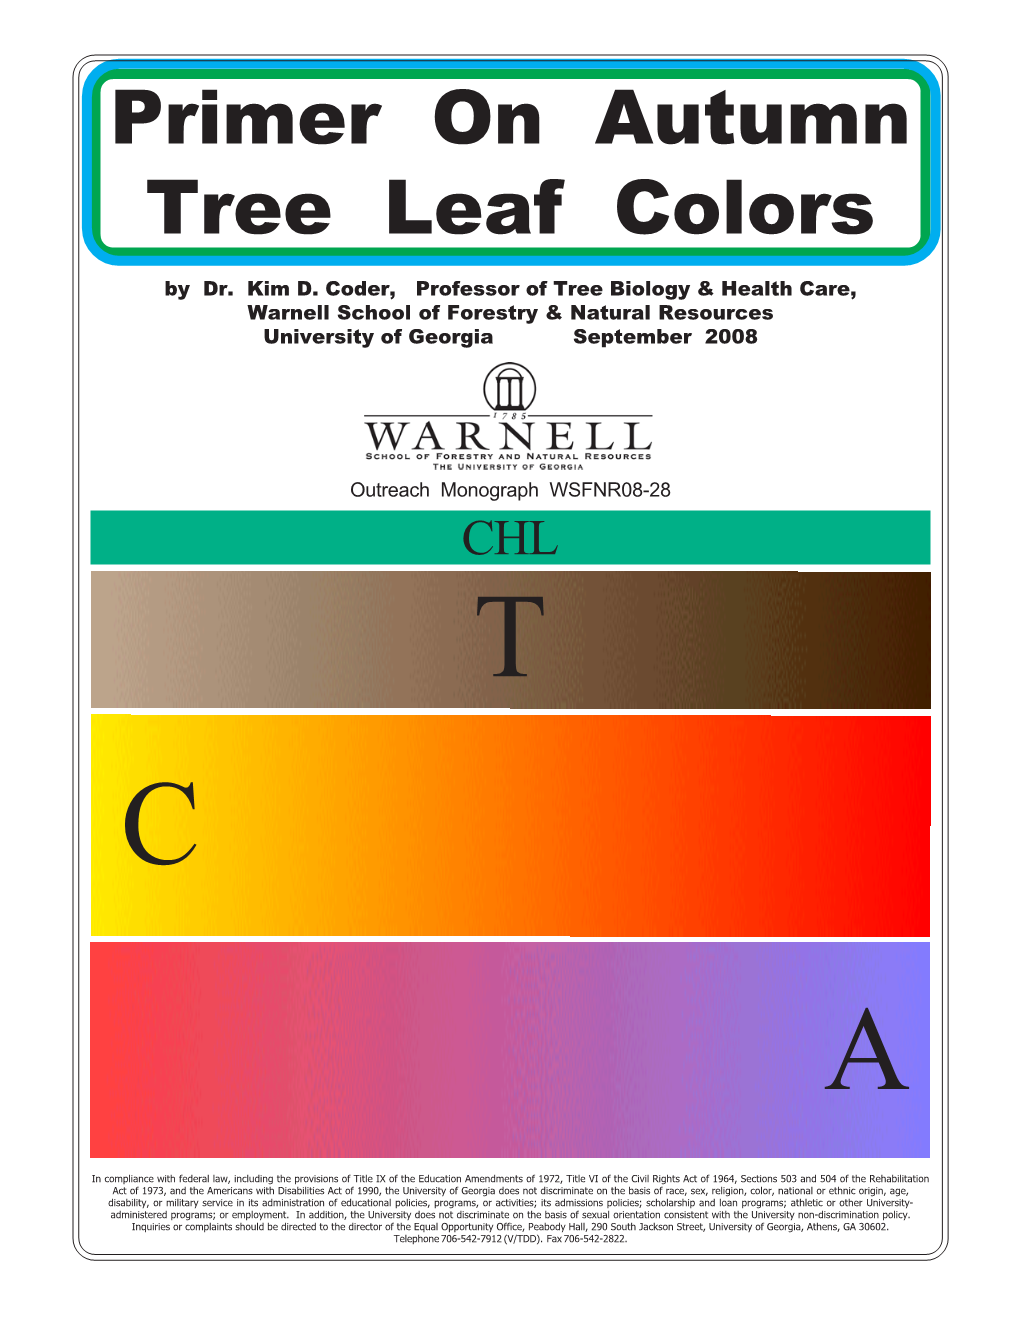 Primer on Autumn Tree Leaf Colors